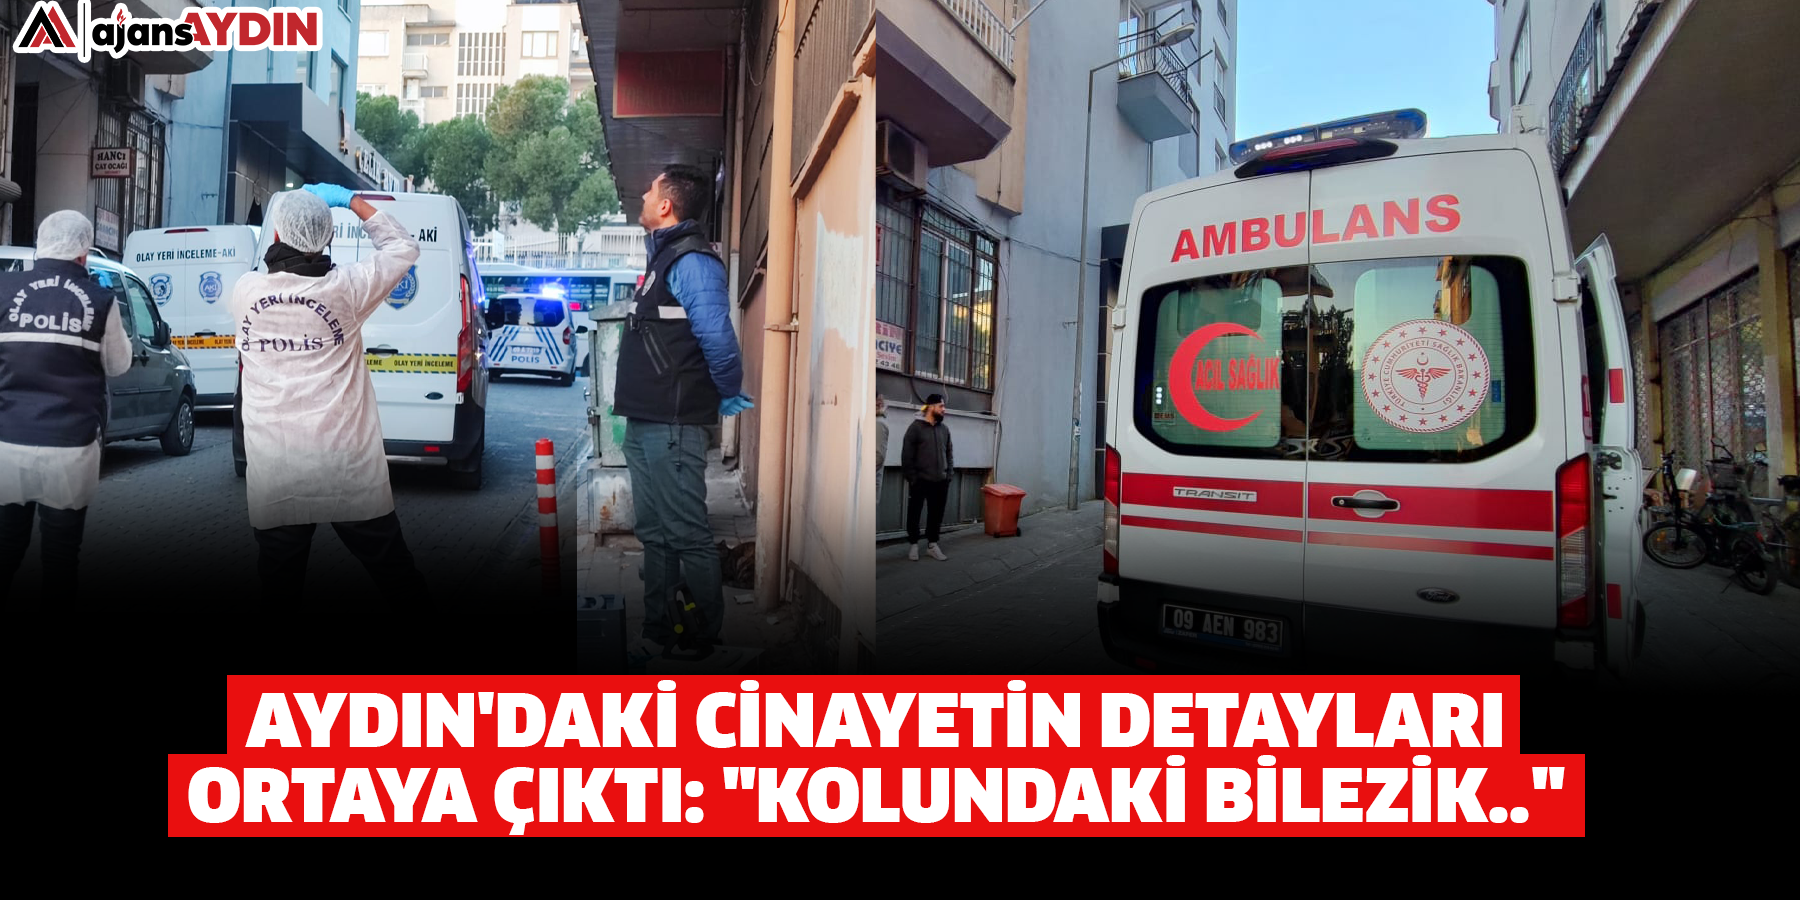 Aydın'daki cinayetin detayları ortaya çıktı: "Kolundaki bilezik.."